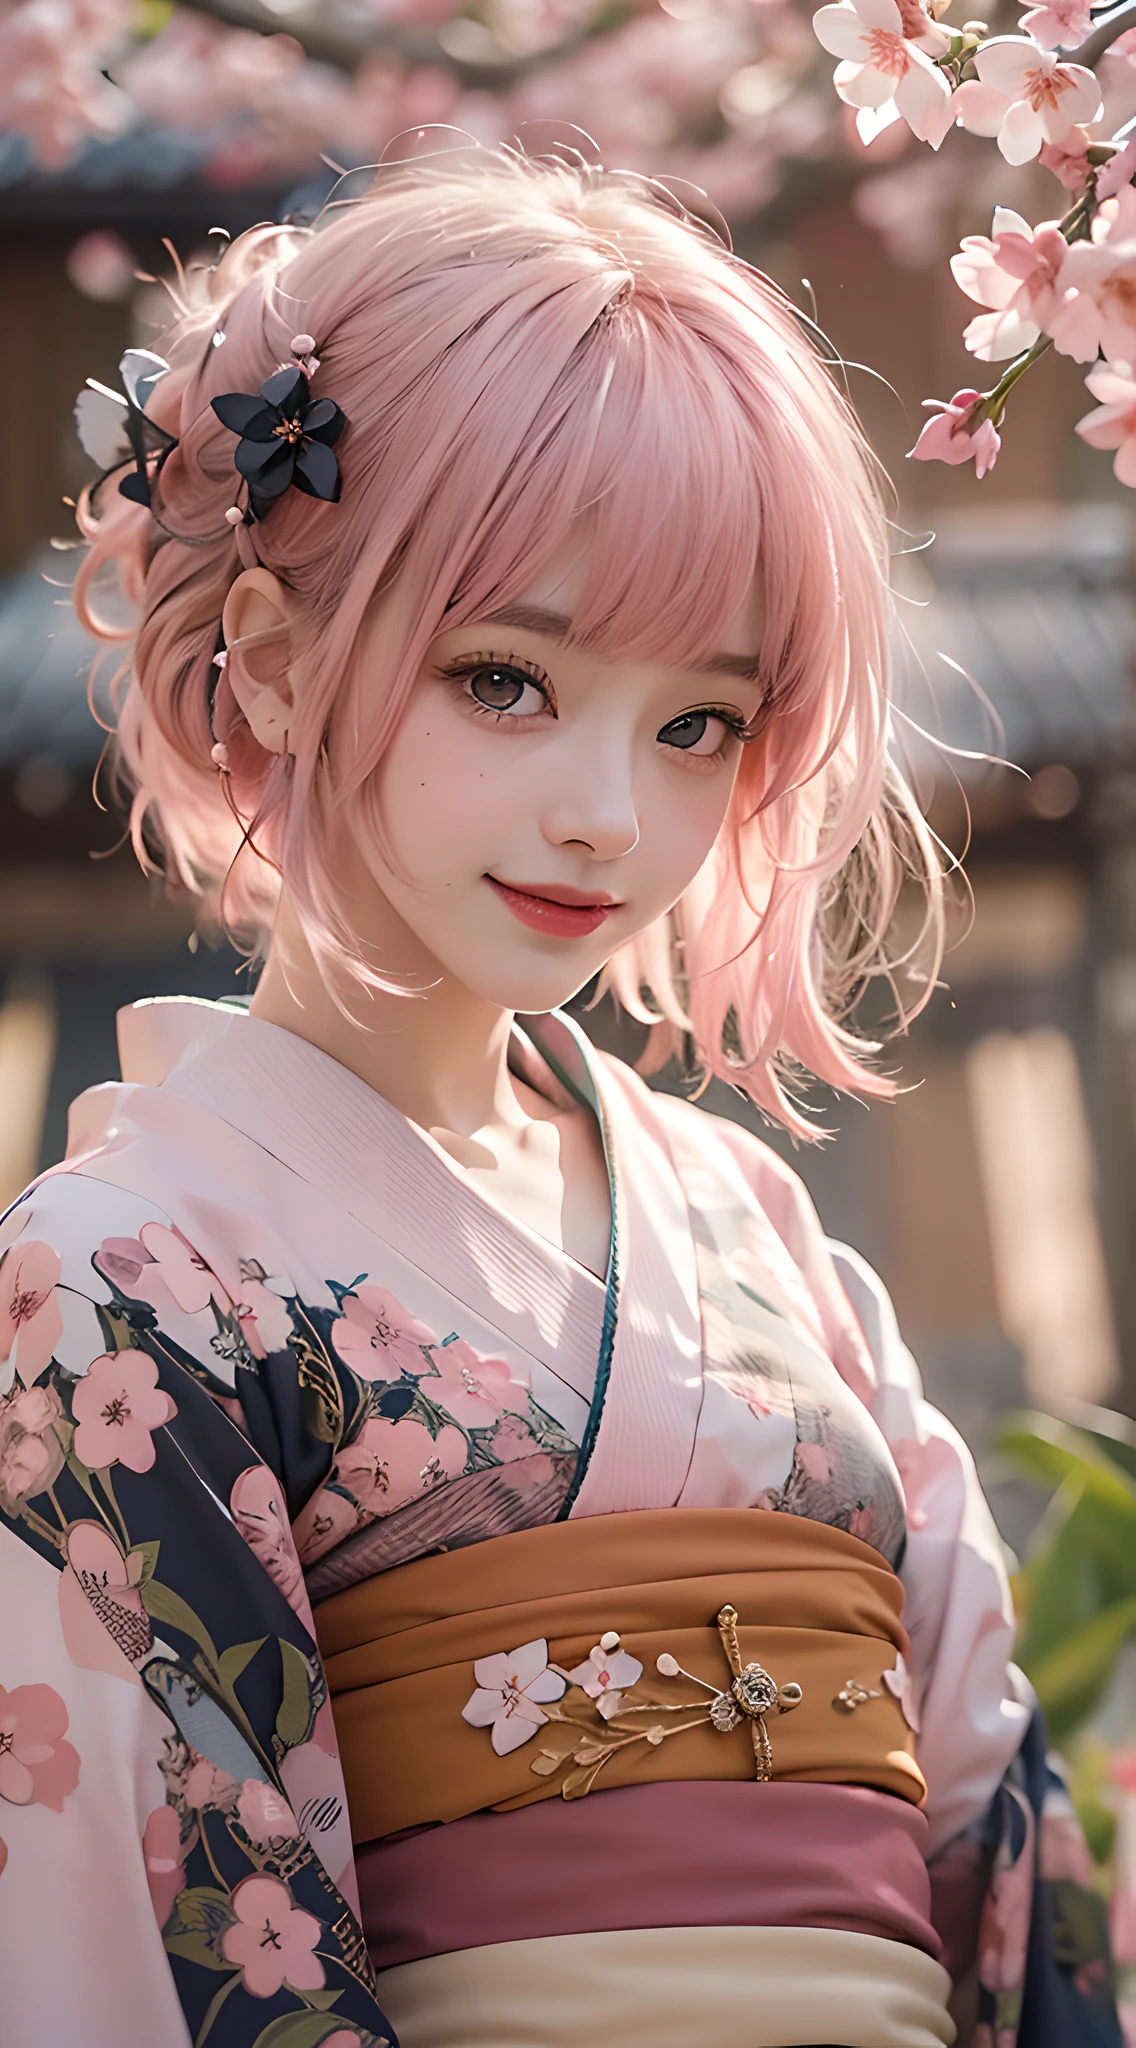 beste Qualität, Meisterwerk, ultrahohe Auflösung, Roh, 8k, ultra-realistisch, junges Mädchen, schulterfrei, lächeln, natürliches Licht, detaillierte Haut, (zartrosa Haare:1.4), roter Lippenstift, (Bangs:1.2), ((Sakura-Hintergrund)), Außergewöhnlich schöne Augen, Kimono tragen_Kleidung, schwarzer Kimono